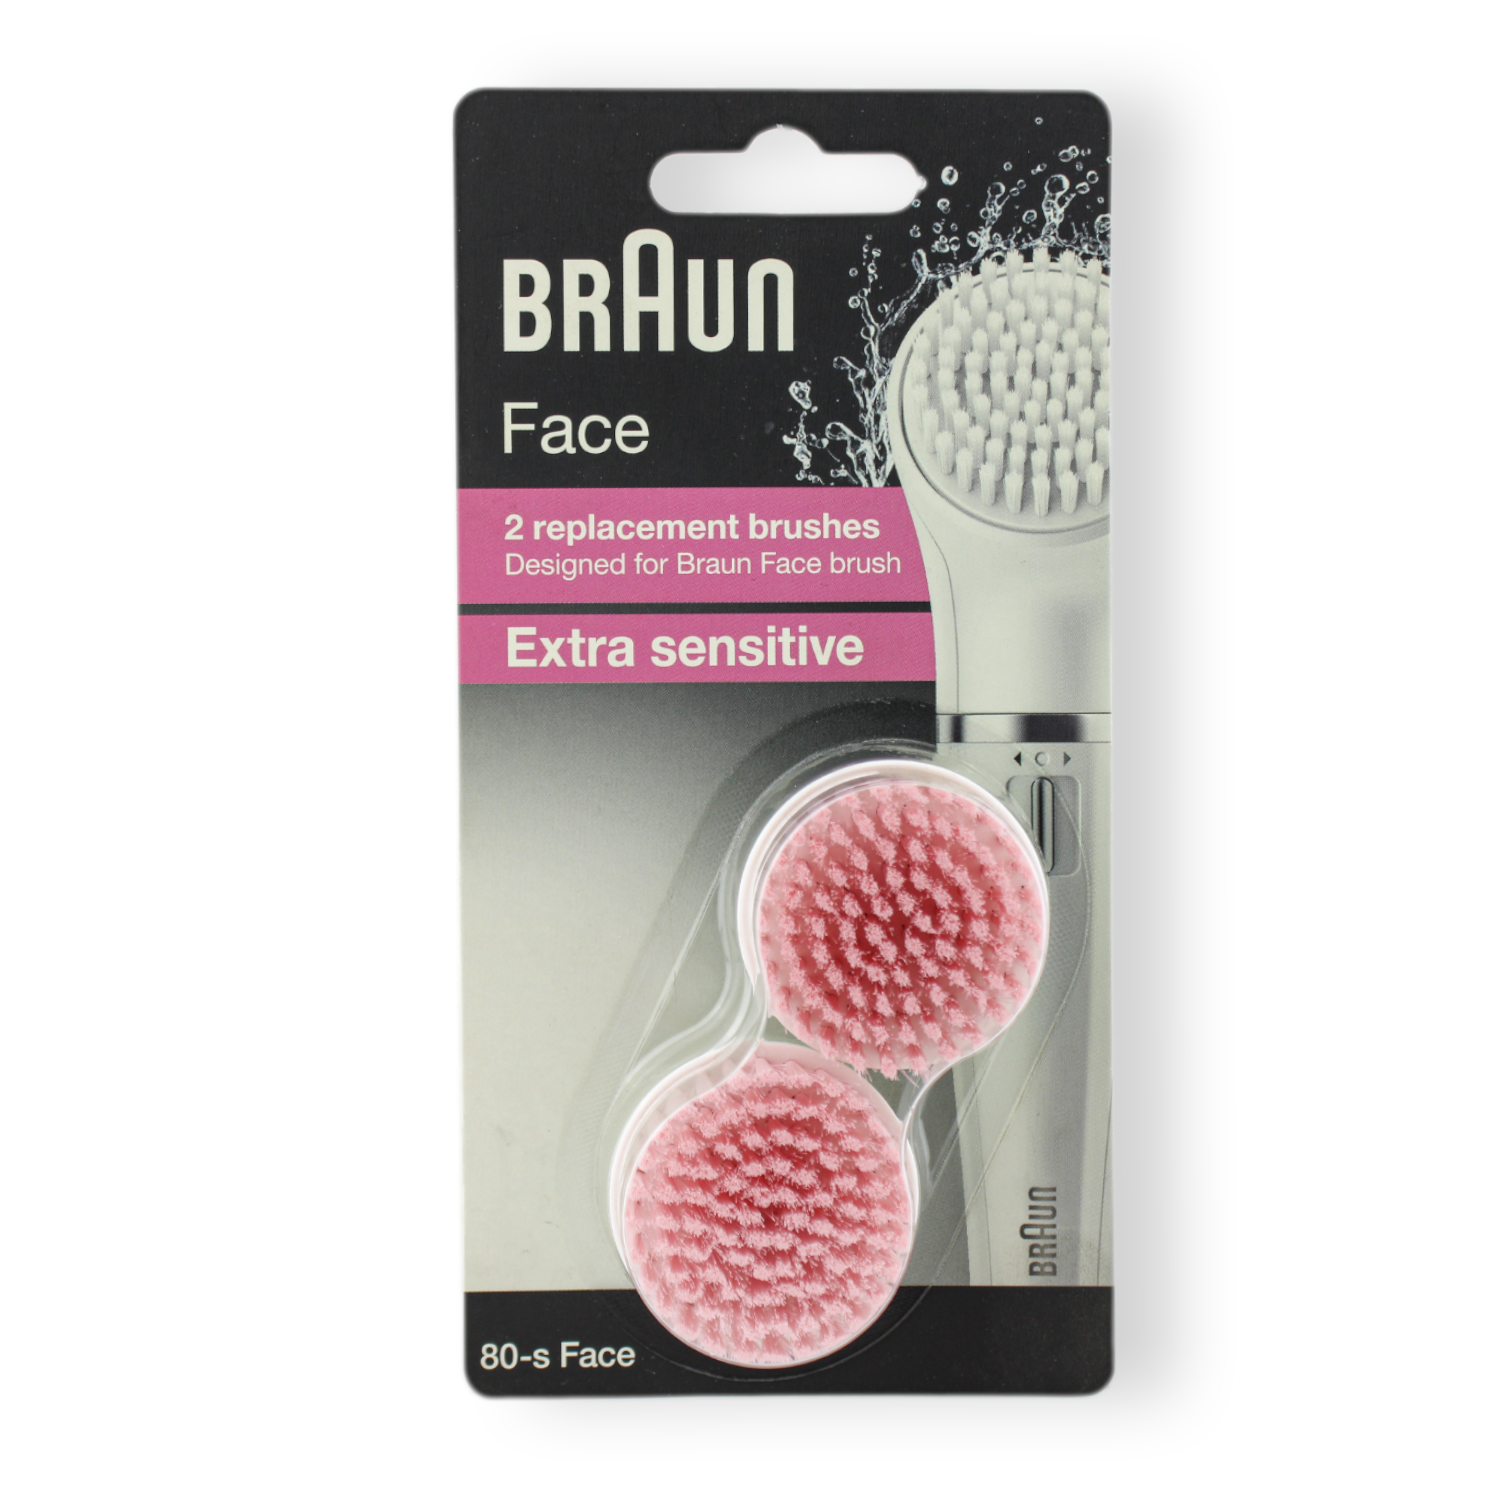 Braun Face 80-s Gesichtsreinigungsbürste Extra Sensitive 2er-Nachfüllpack